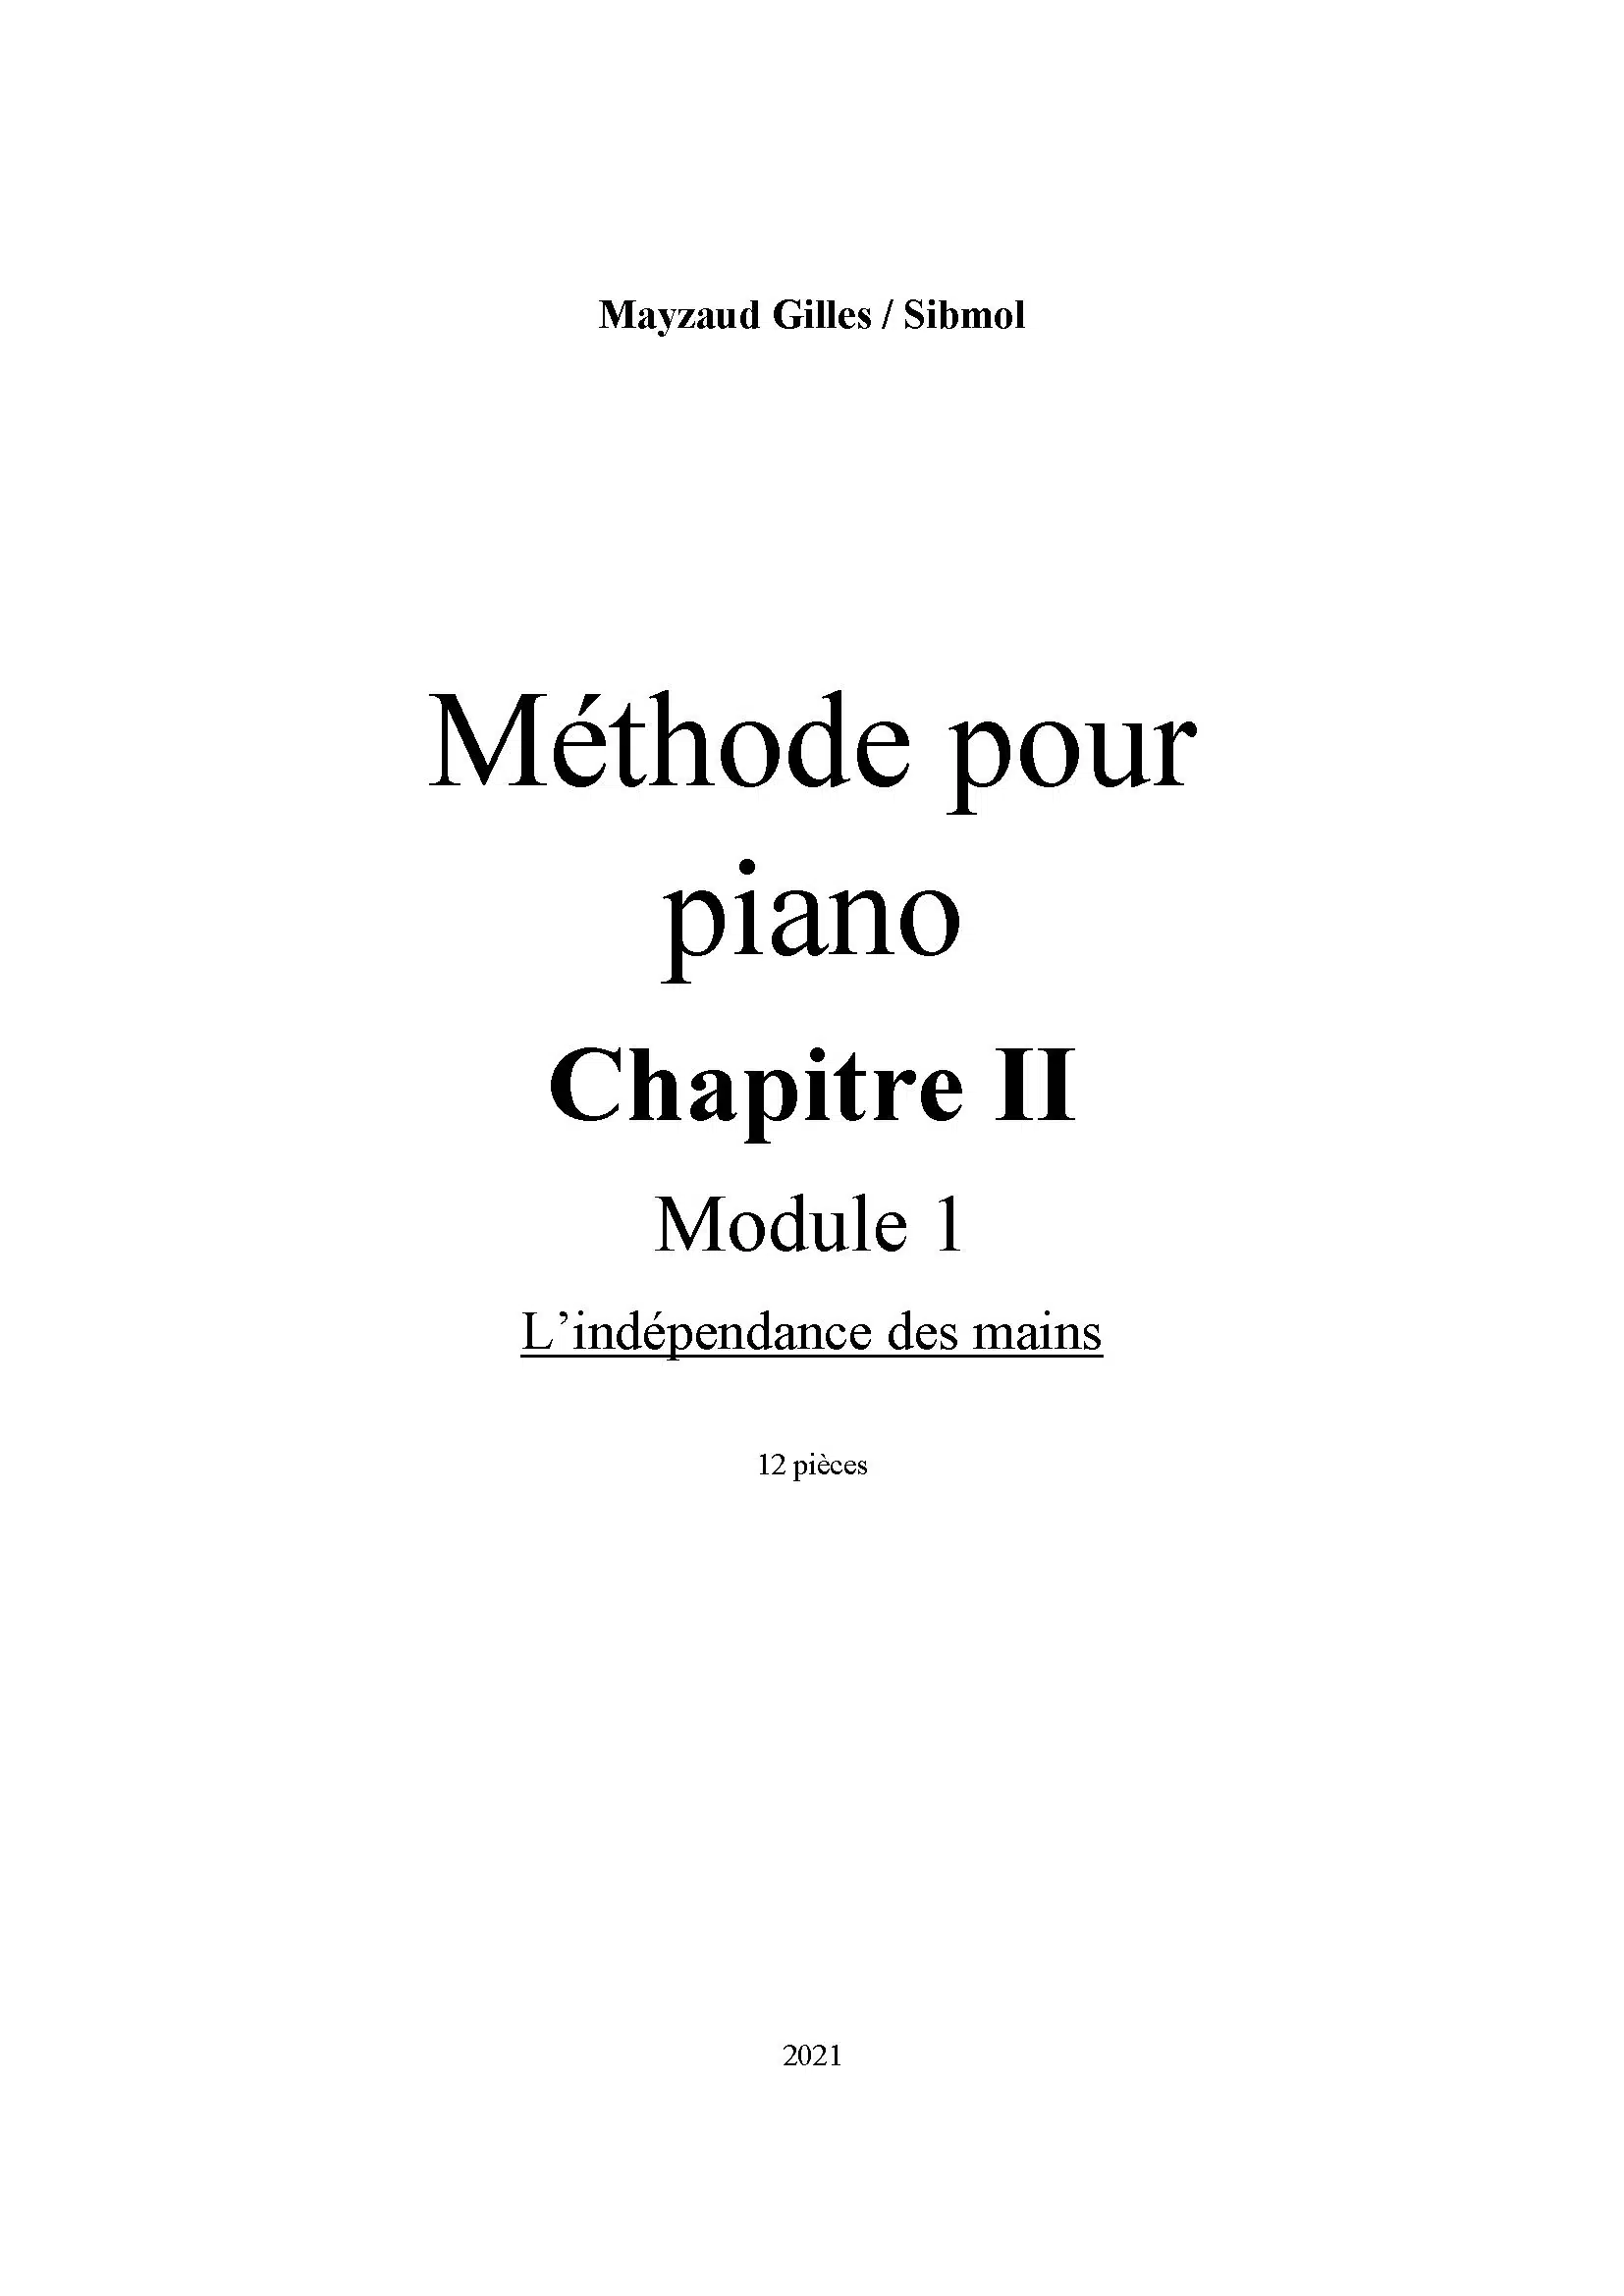 https://boutique.cahierdupianiste.com/wp-content/uploads/2021/09/CDP-Methode-pour-piano-Chapitre-II-Partie-1_Page_03_Page_1.jpg.webp